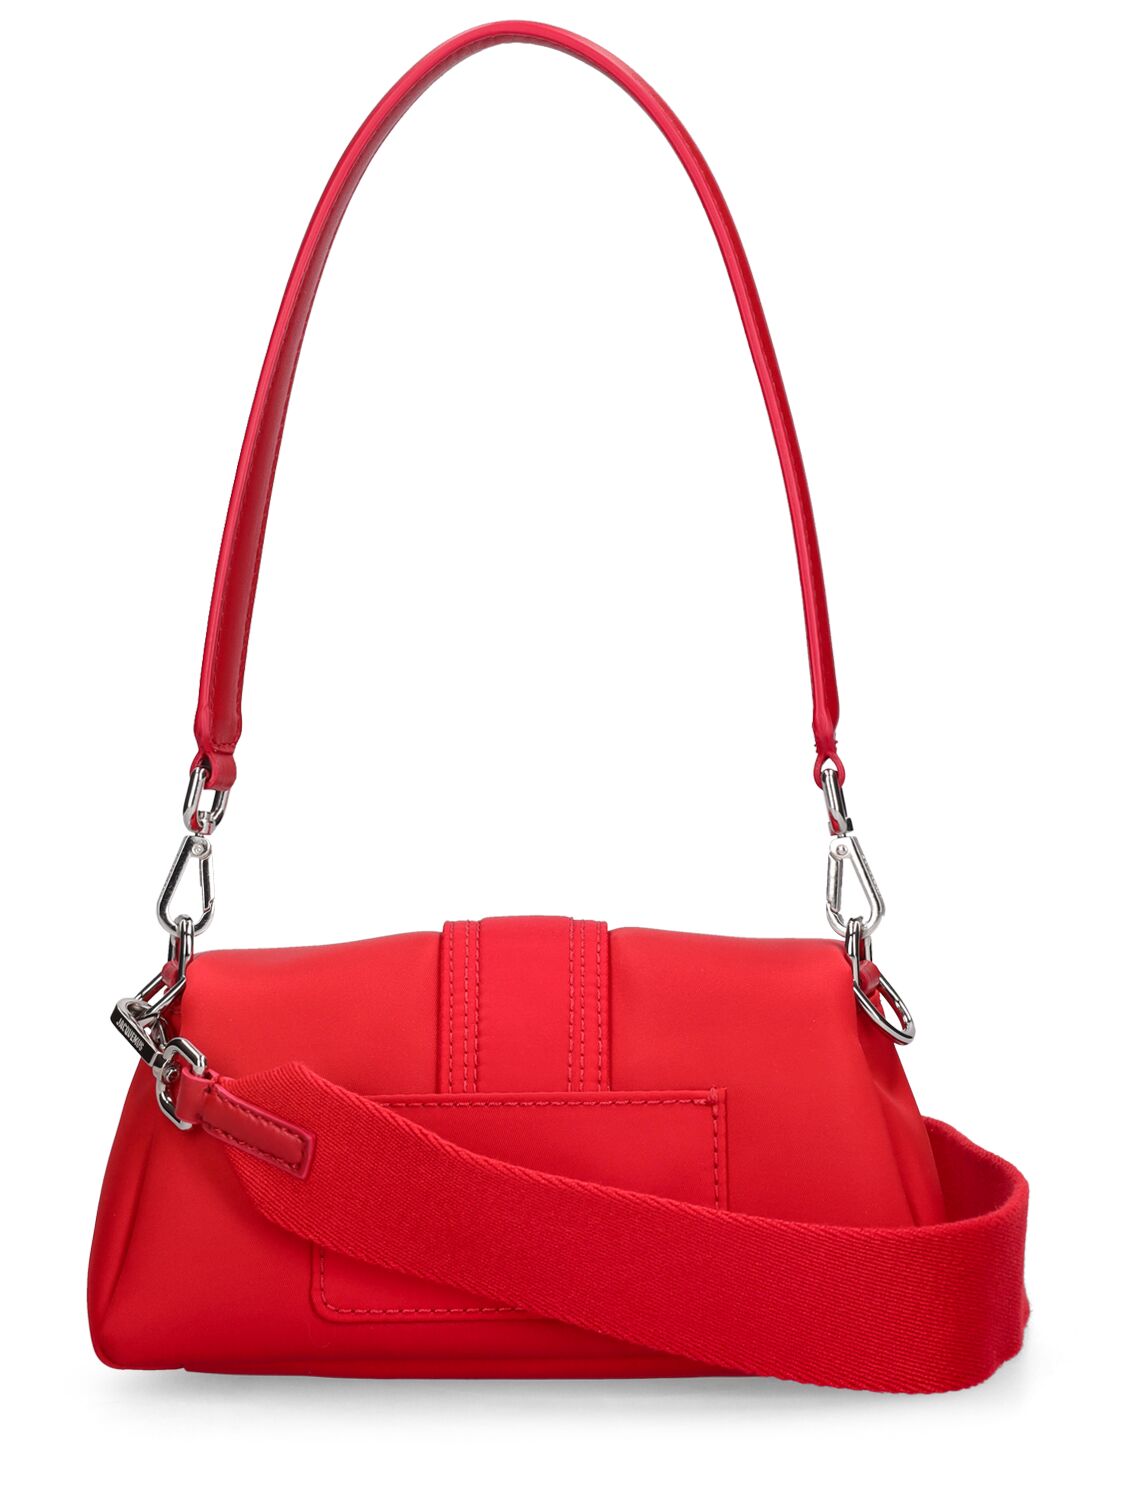 Shop Jacquemus Le Petit Bambimou Nylon Shoulder Bag In Red